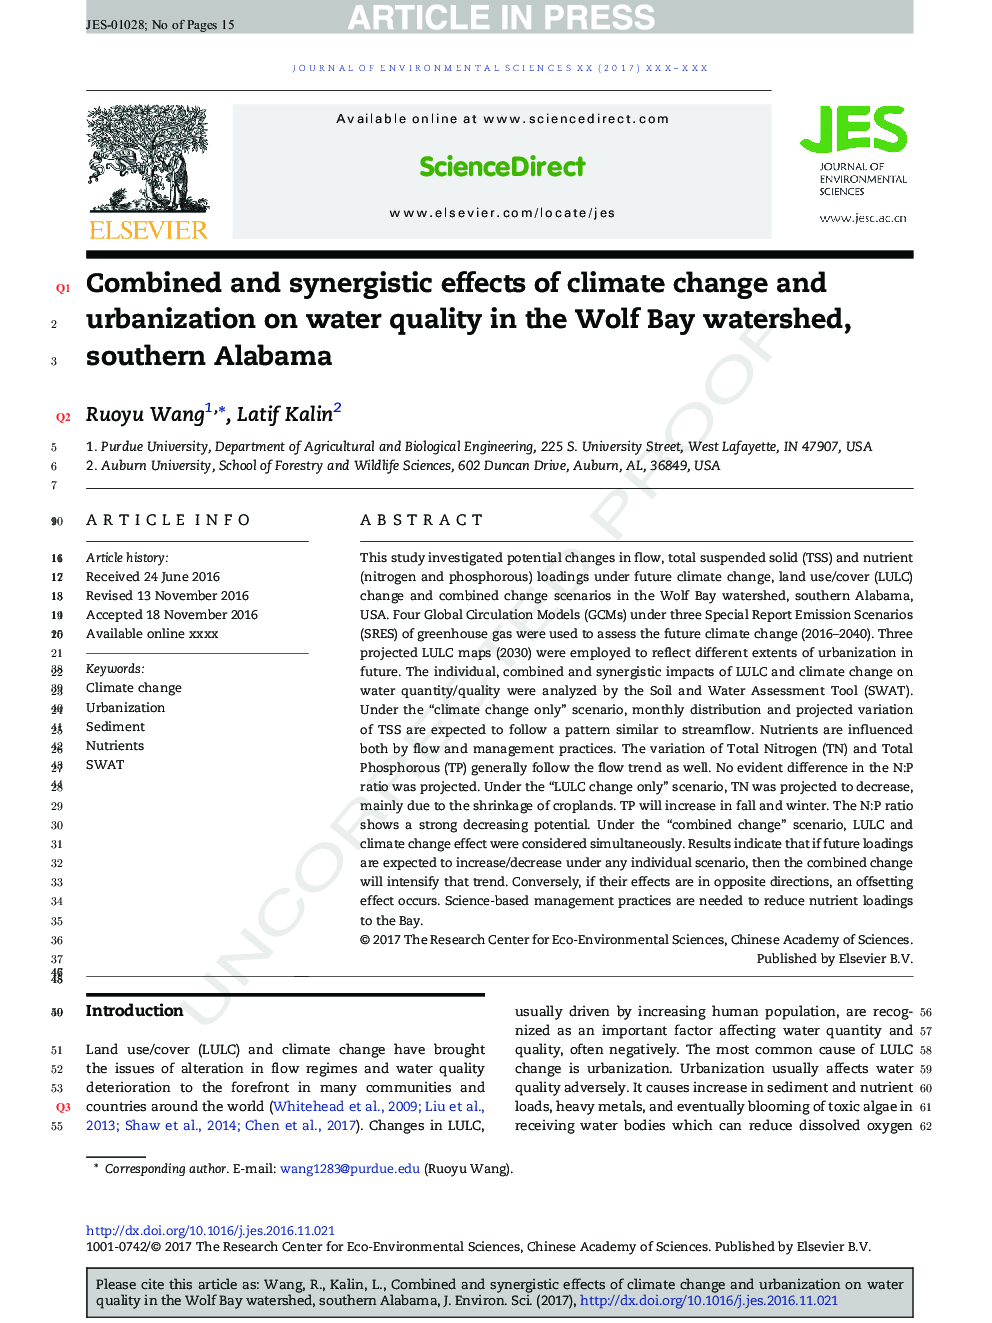 اثرات ترکیبی و هم افزایی تغییرات آب و هوایی و شهرنشینی بر کیفیت آب در حوزه آبریز گرگ، جنوب آلاباما 